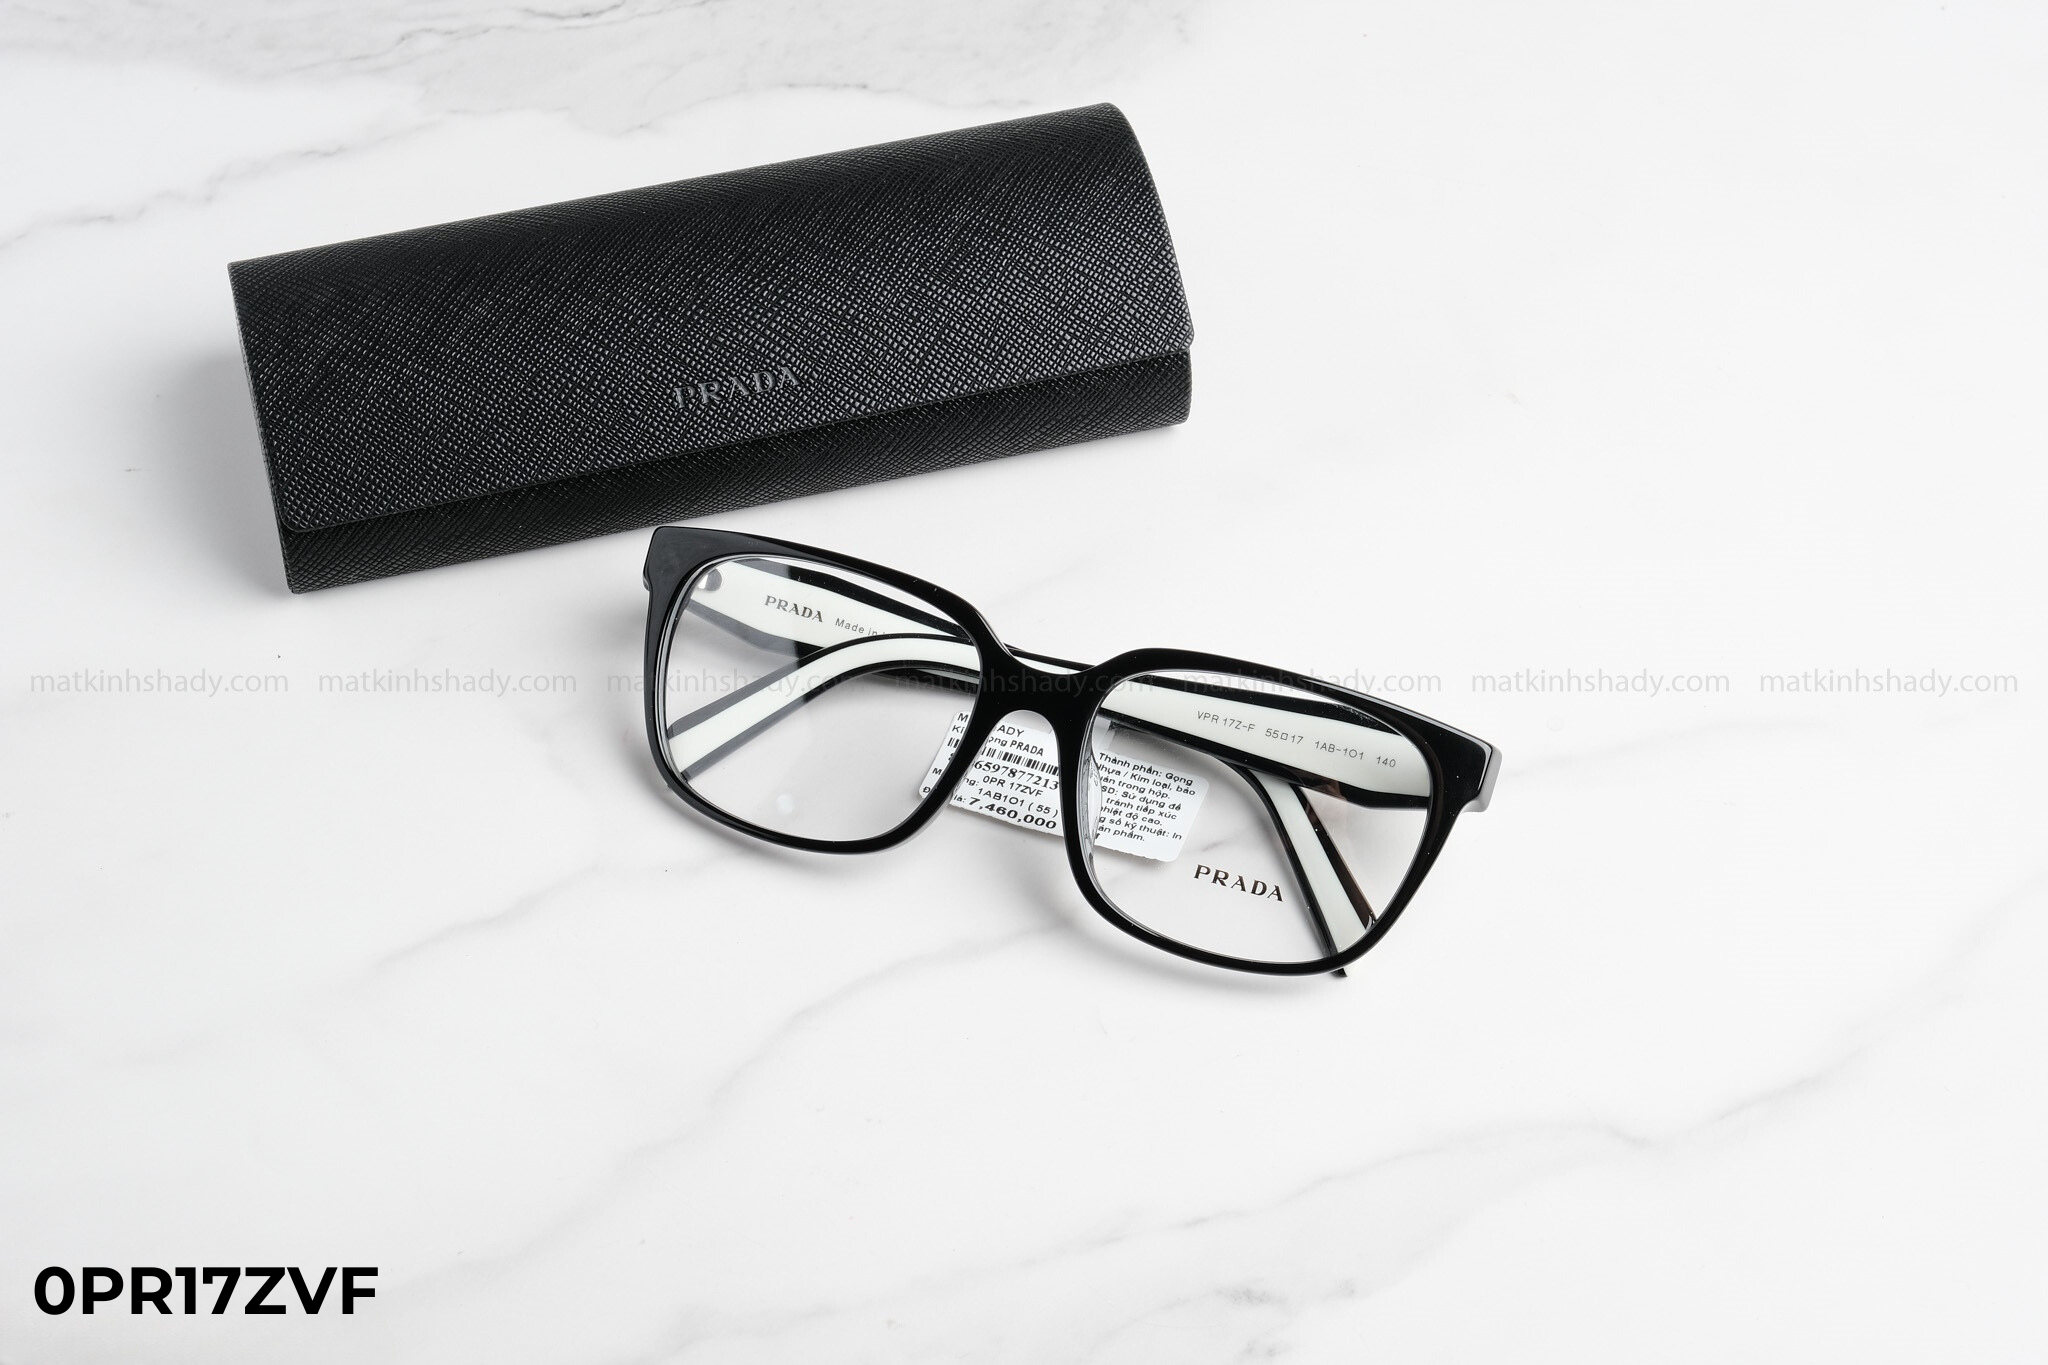  Prada - Eyewear - Glasses - 0PR17ZVF 